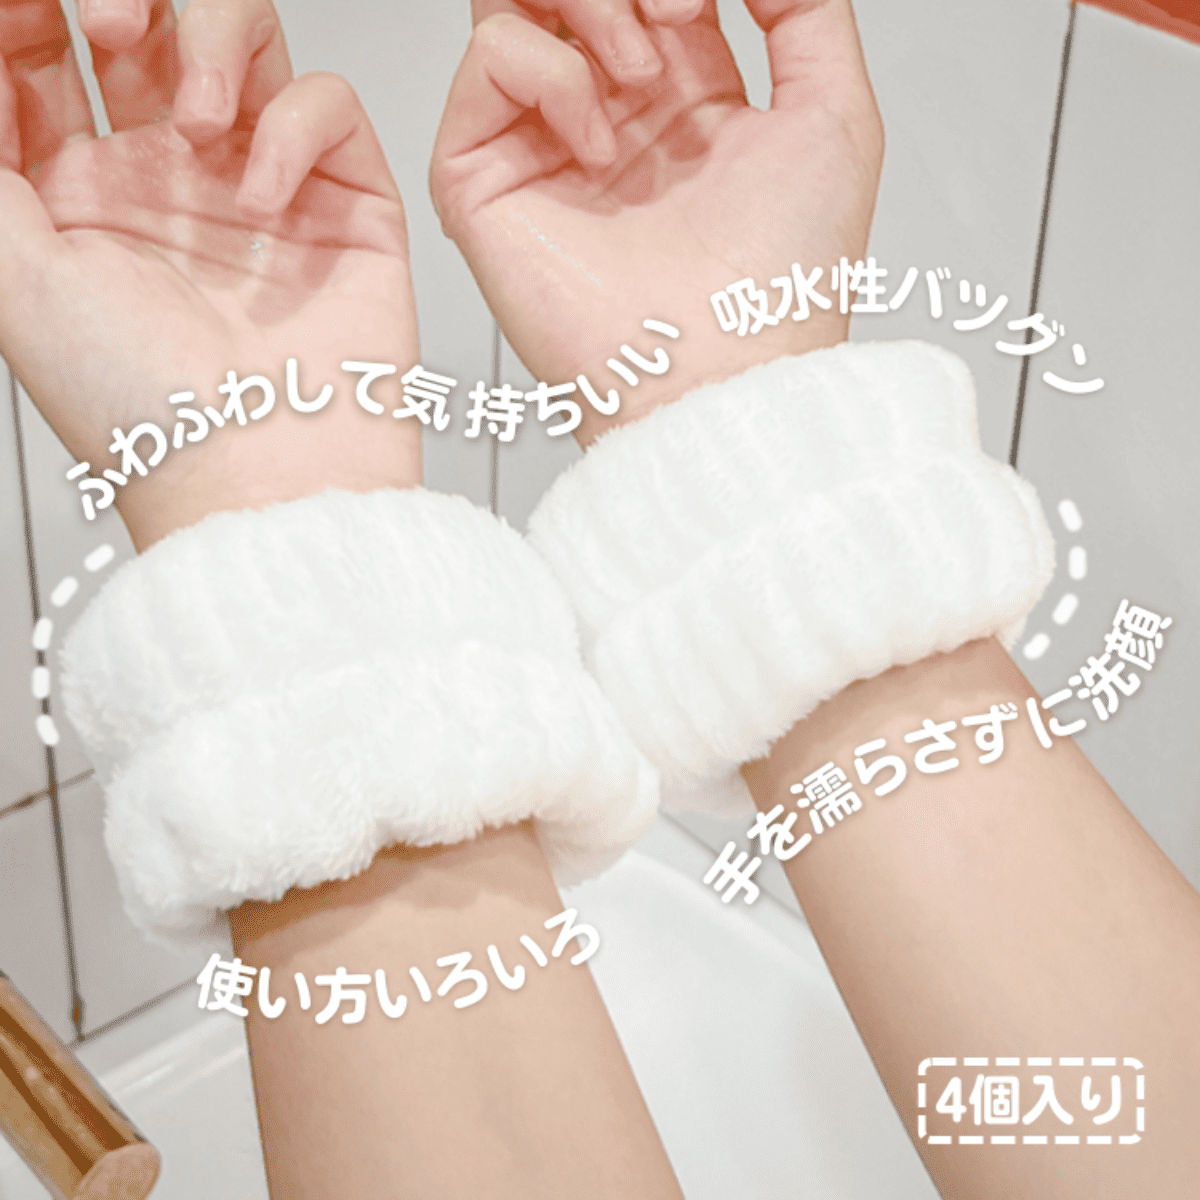 袖濡れ防止 リストバンド （4個入り）｜洗顔時に手首にはめてだけで 簡単に使える、 袖濡れを防ぎます☆|undefined